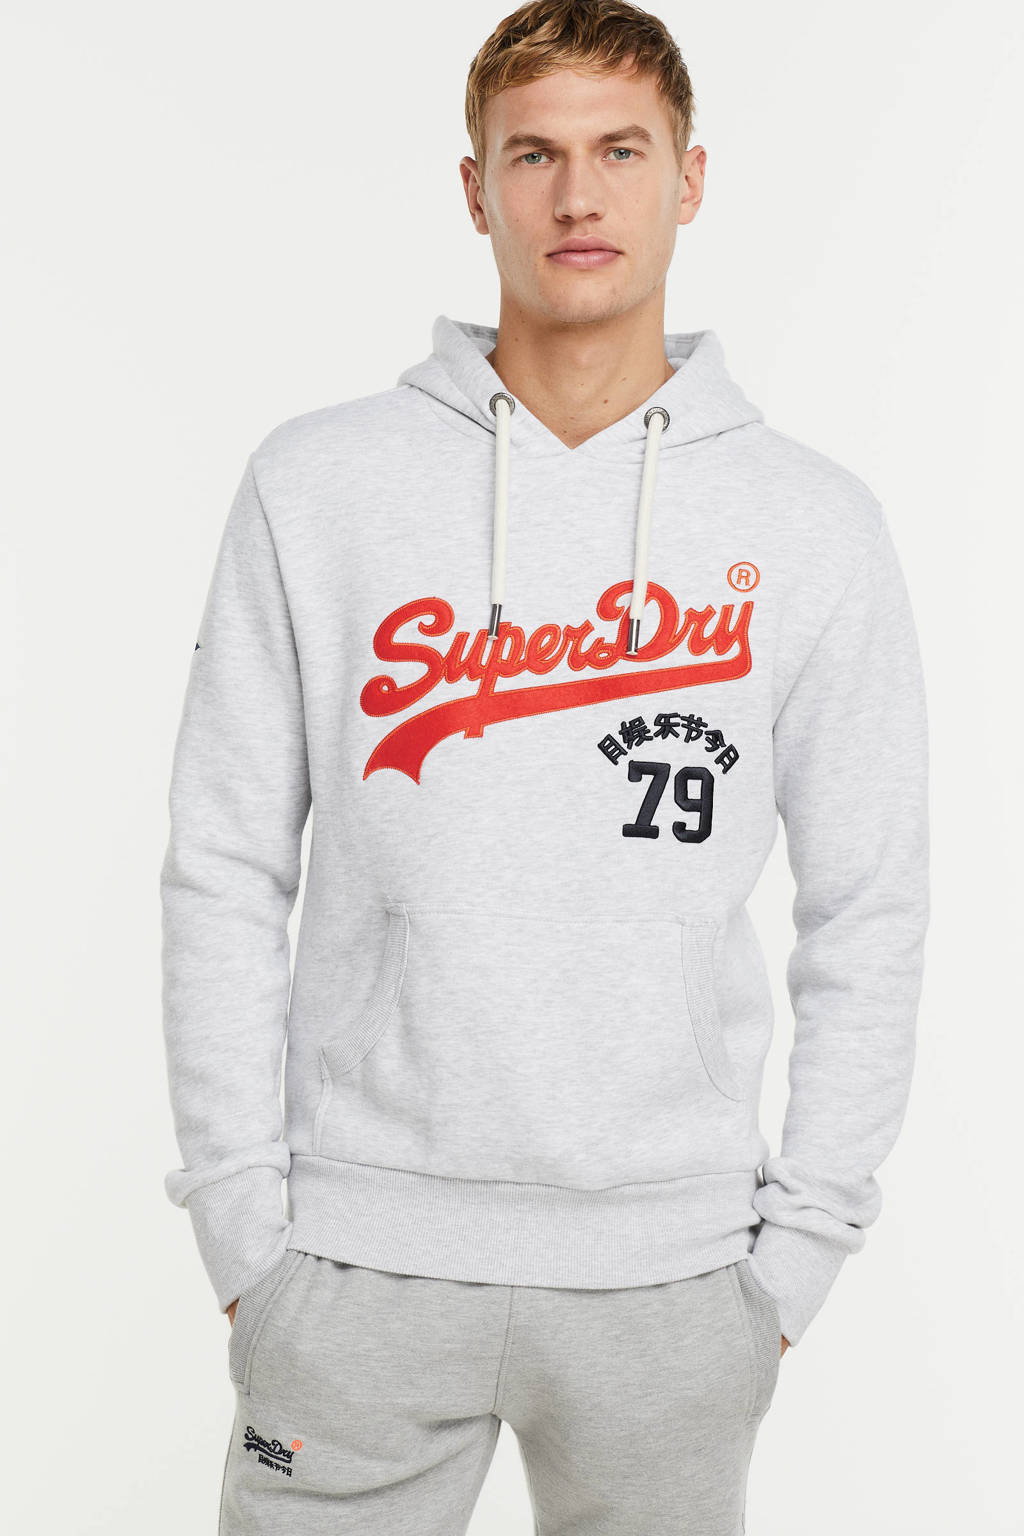 Vermoorden Plantkunde steeg Superdry hoodie met logo glacier grey marl | wehkamp